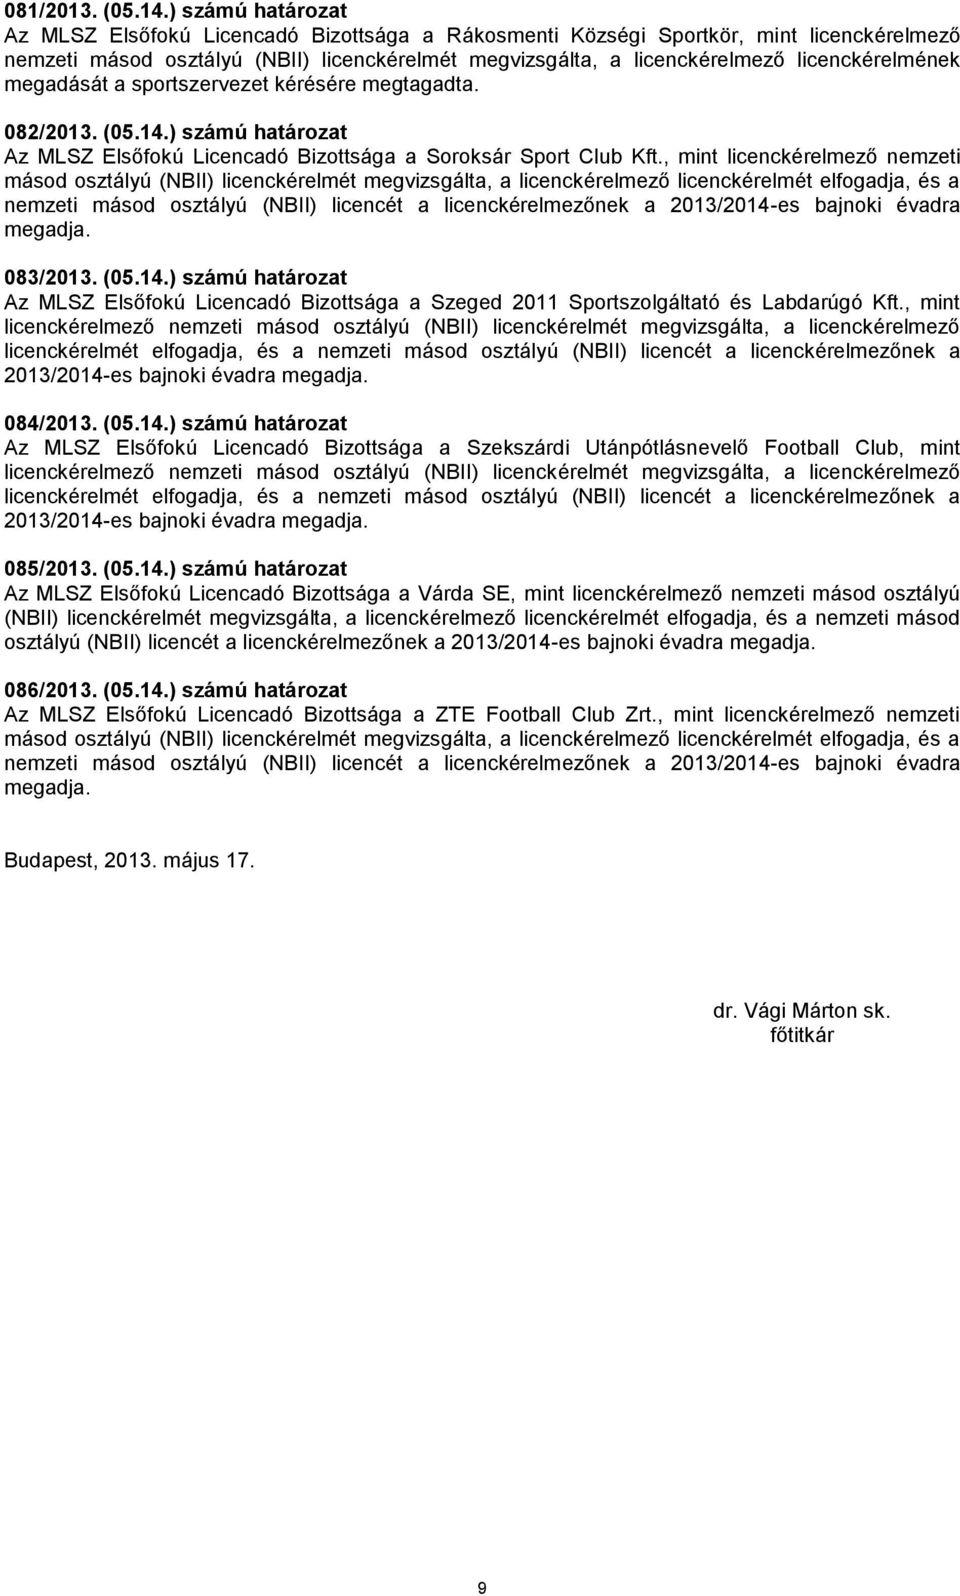 licenckérelmének megadását a sportszervezet kérésére megtagadta. 082/2013. (05.14.) számú határozat Az MLSZ Elsőfokú Licencadó Bizottsága a Soroksár Sport Club Kft.